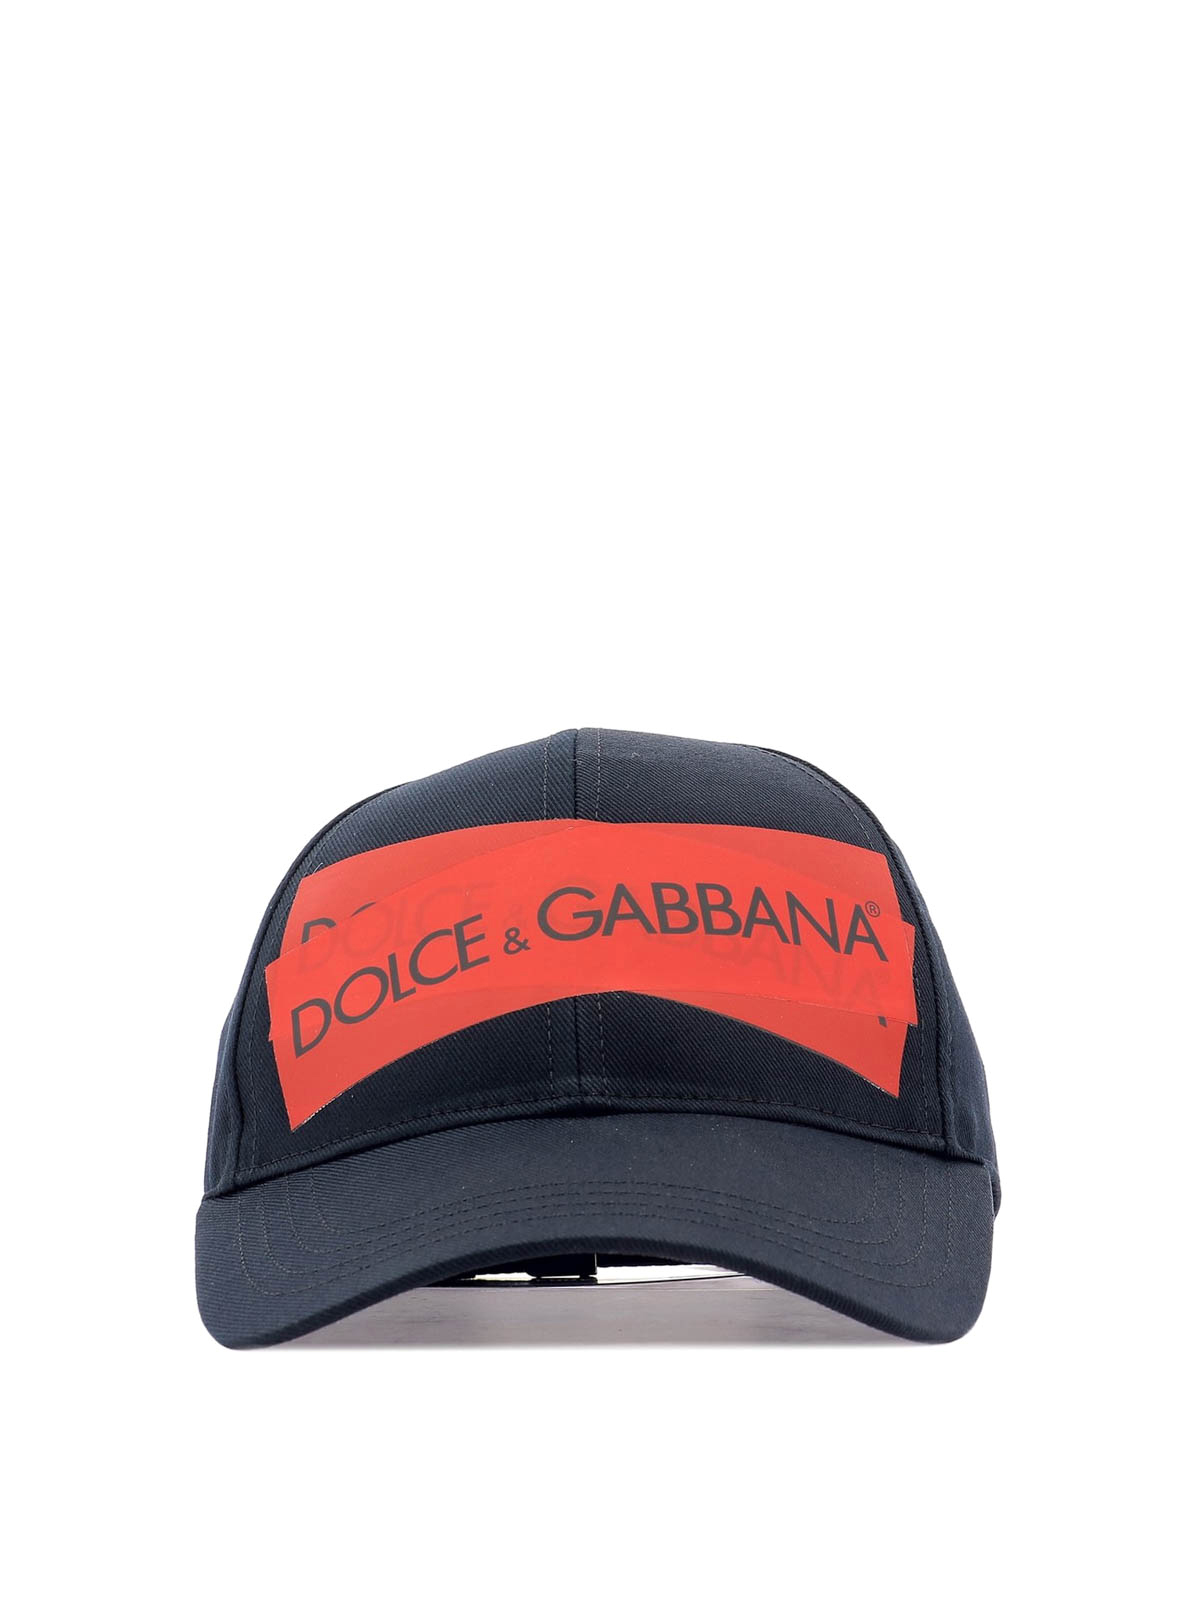 dolce and gabbana baseball cap